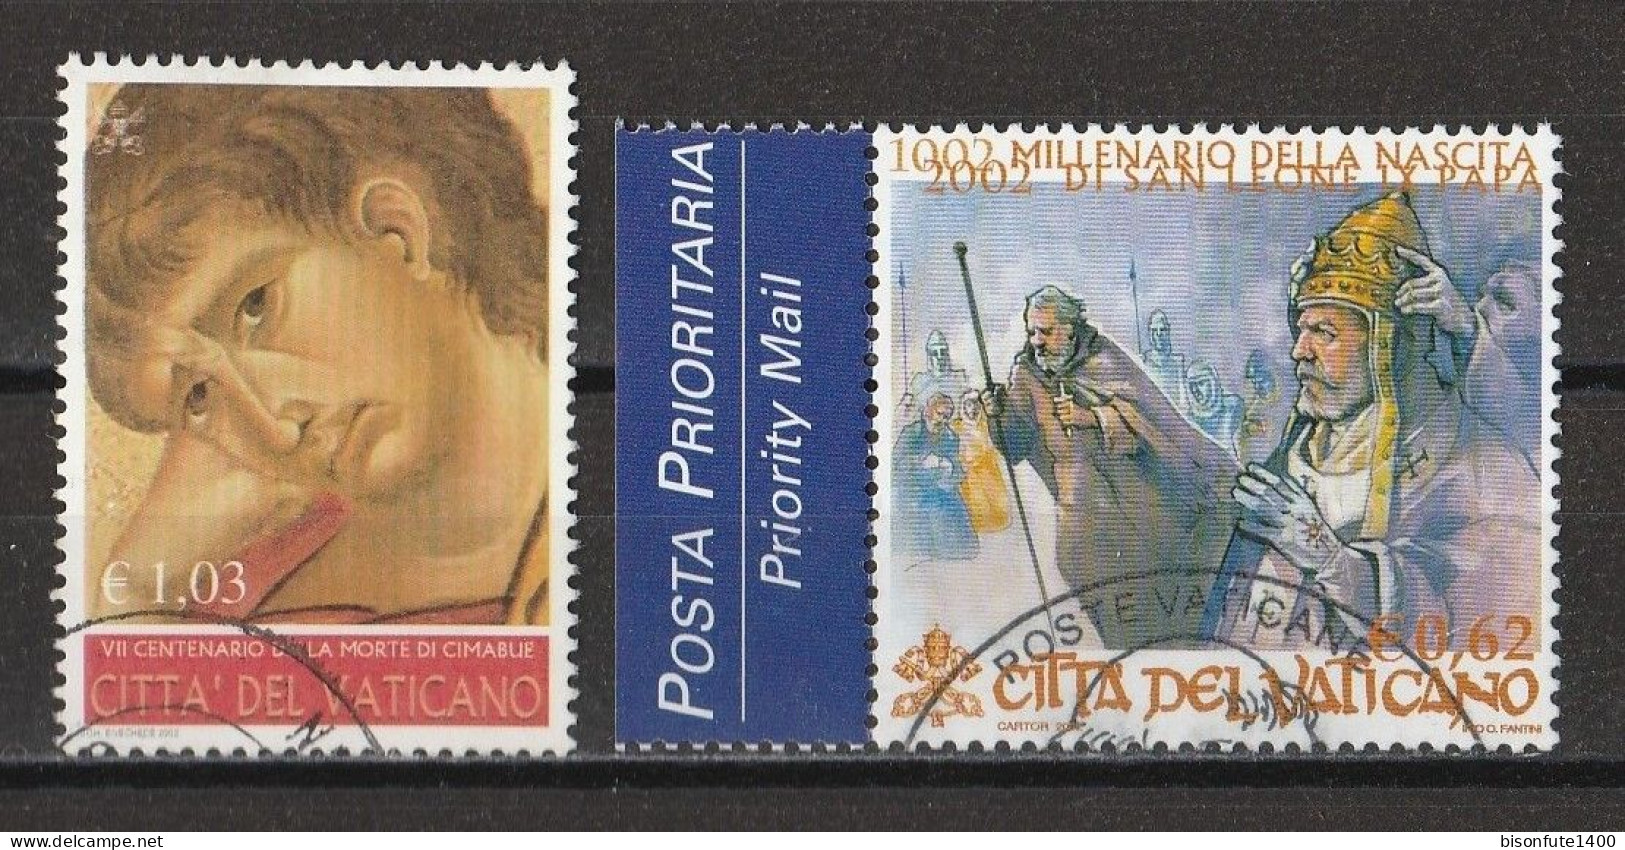 Vatican 2002 : Timbres Yvert & Tellier N° 1266 - 1268 - 1270 - 1275 Et 1277 Oblitérés. - Gebruikt